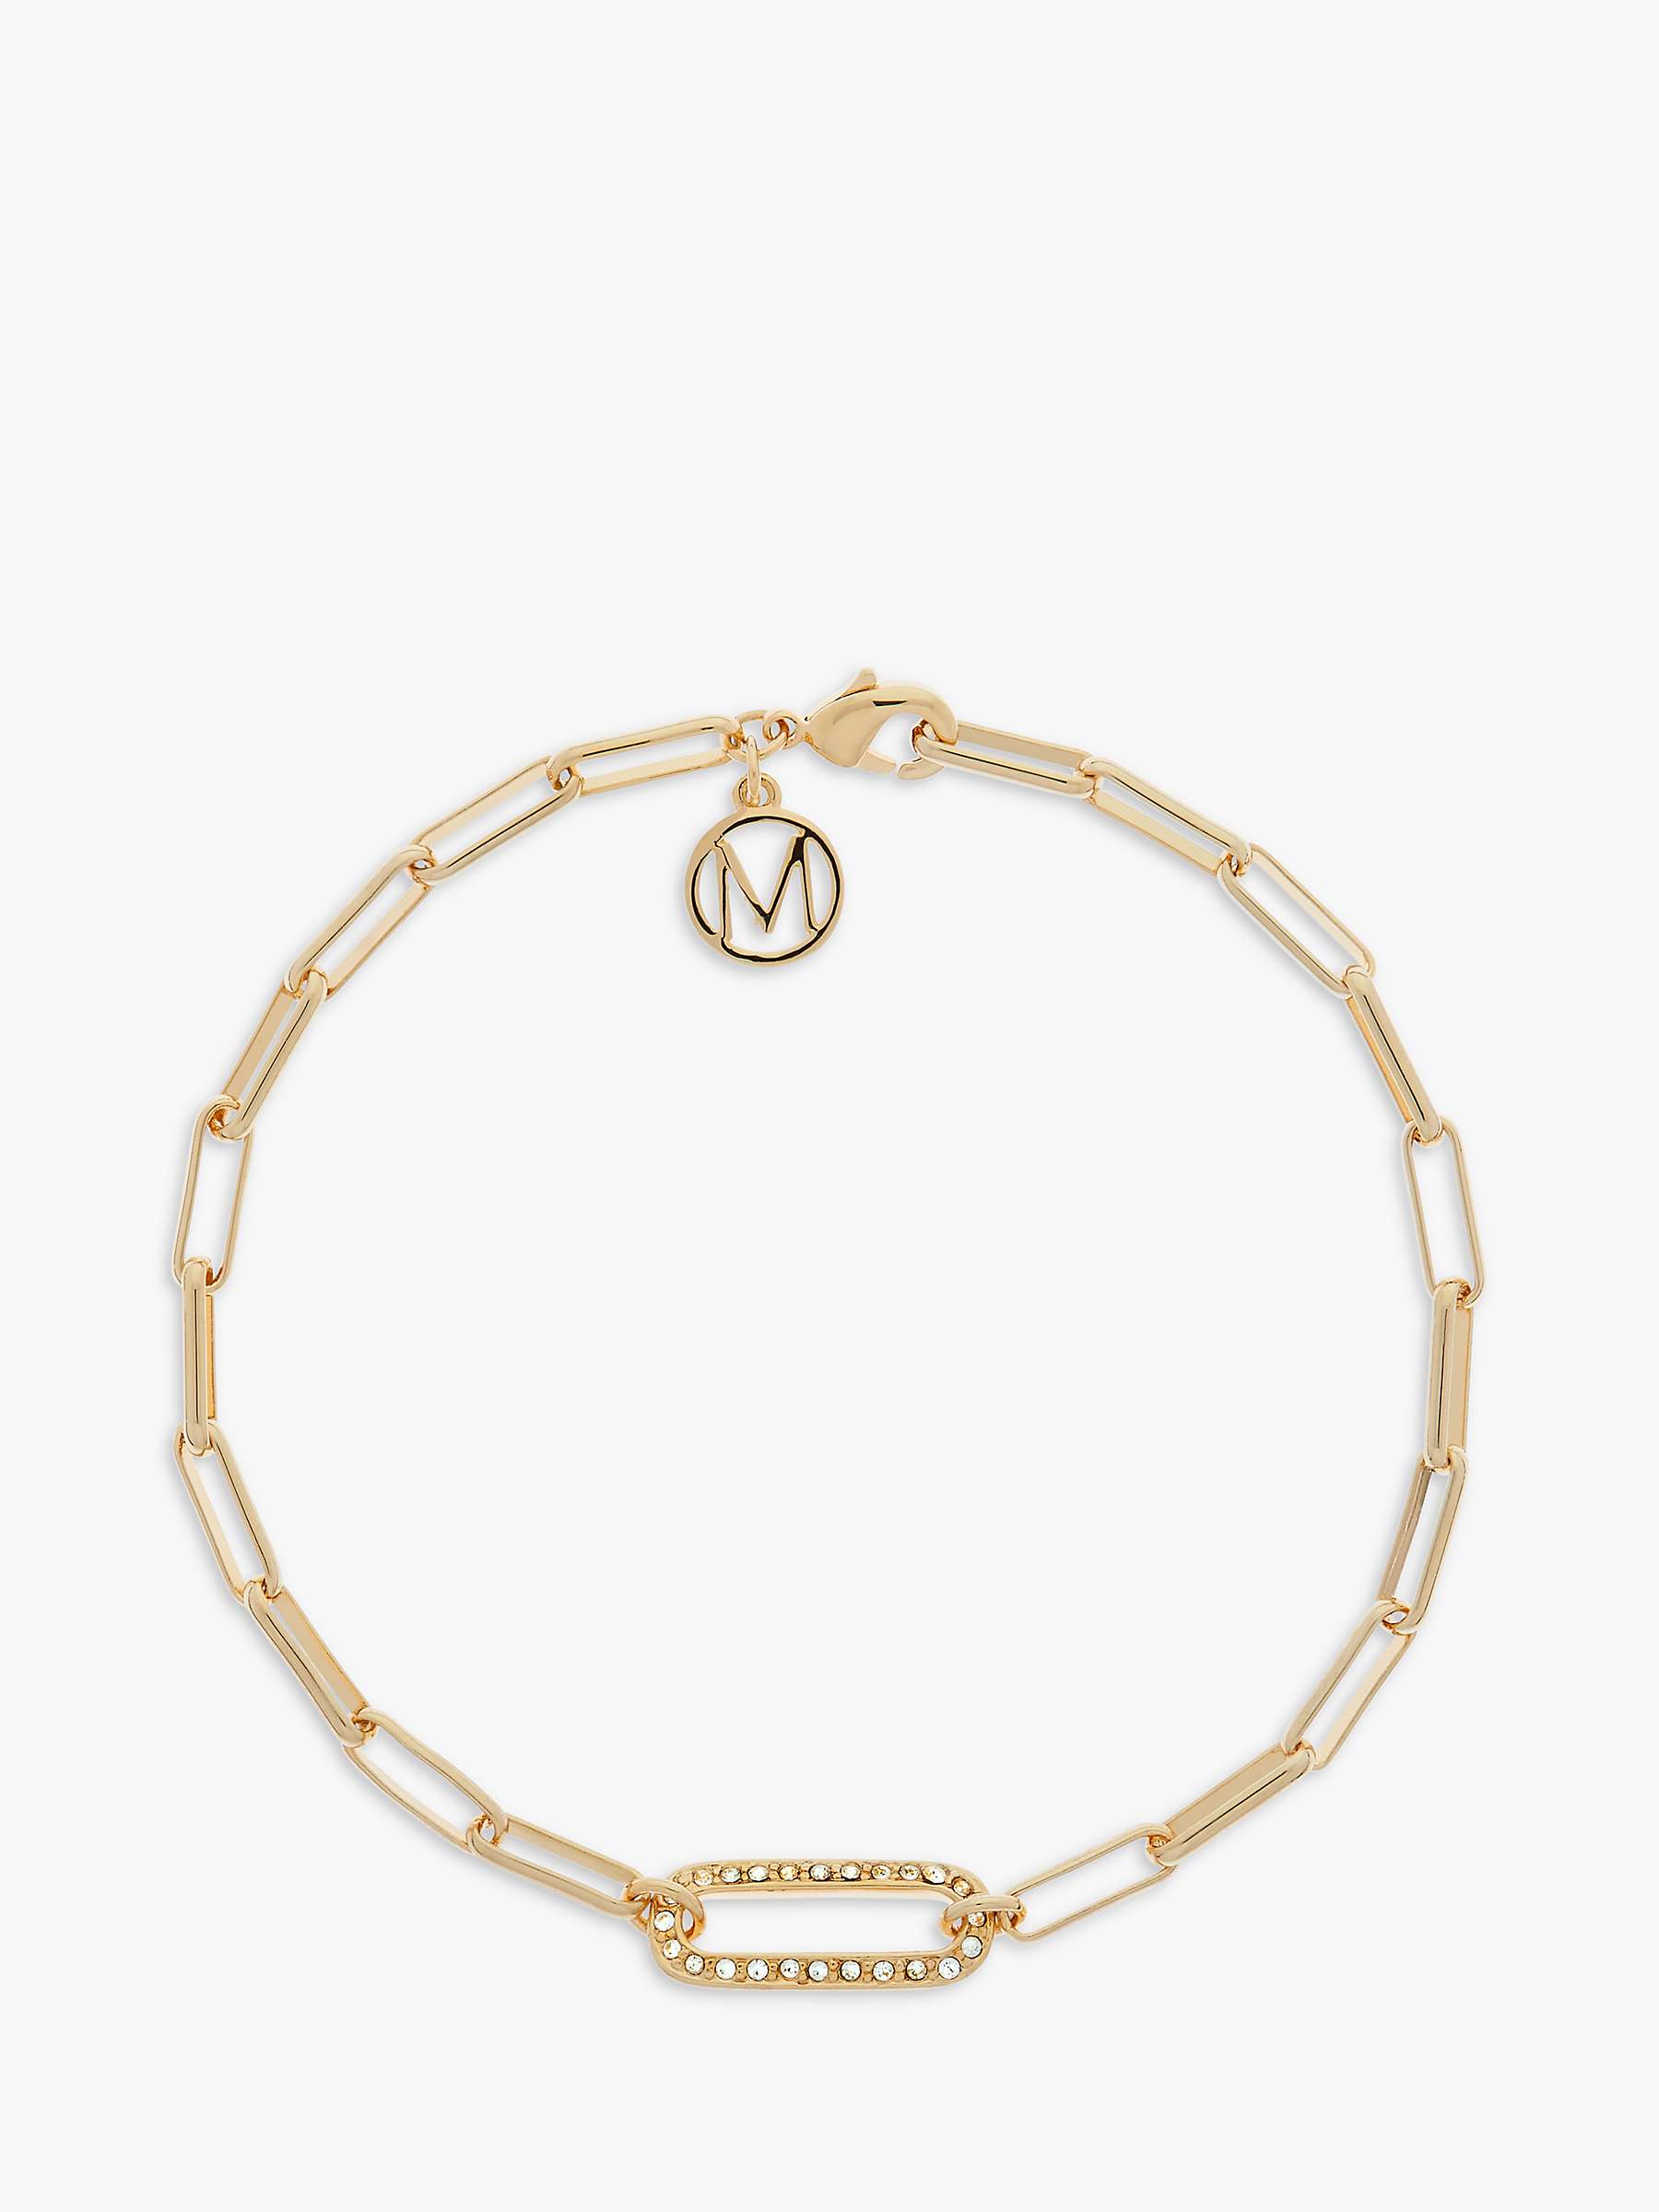 Buy Melissa Odabash Crystal Oval Link Chain Bracelet, Gold Online at johnlewis.com